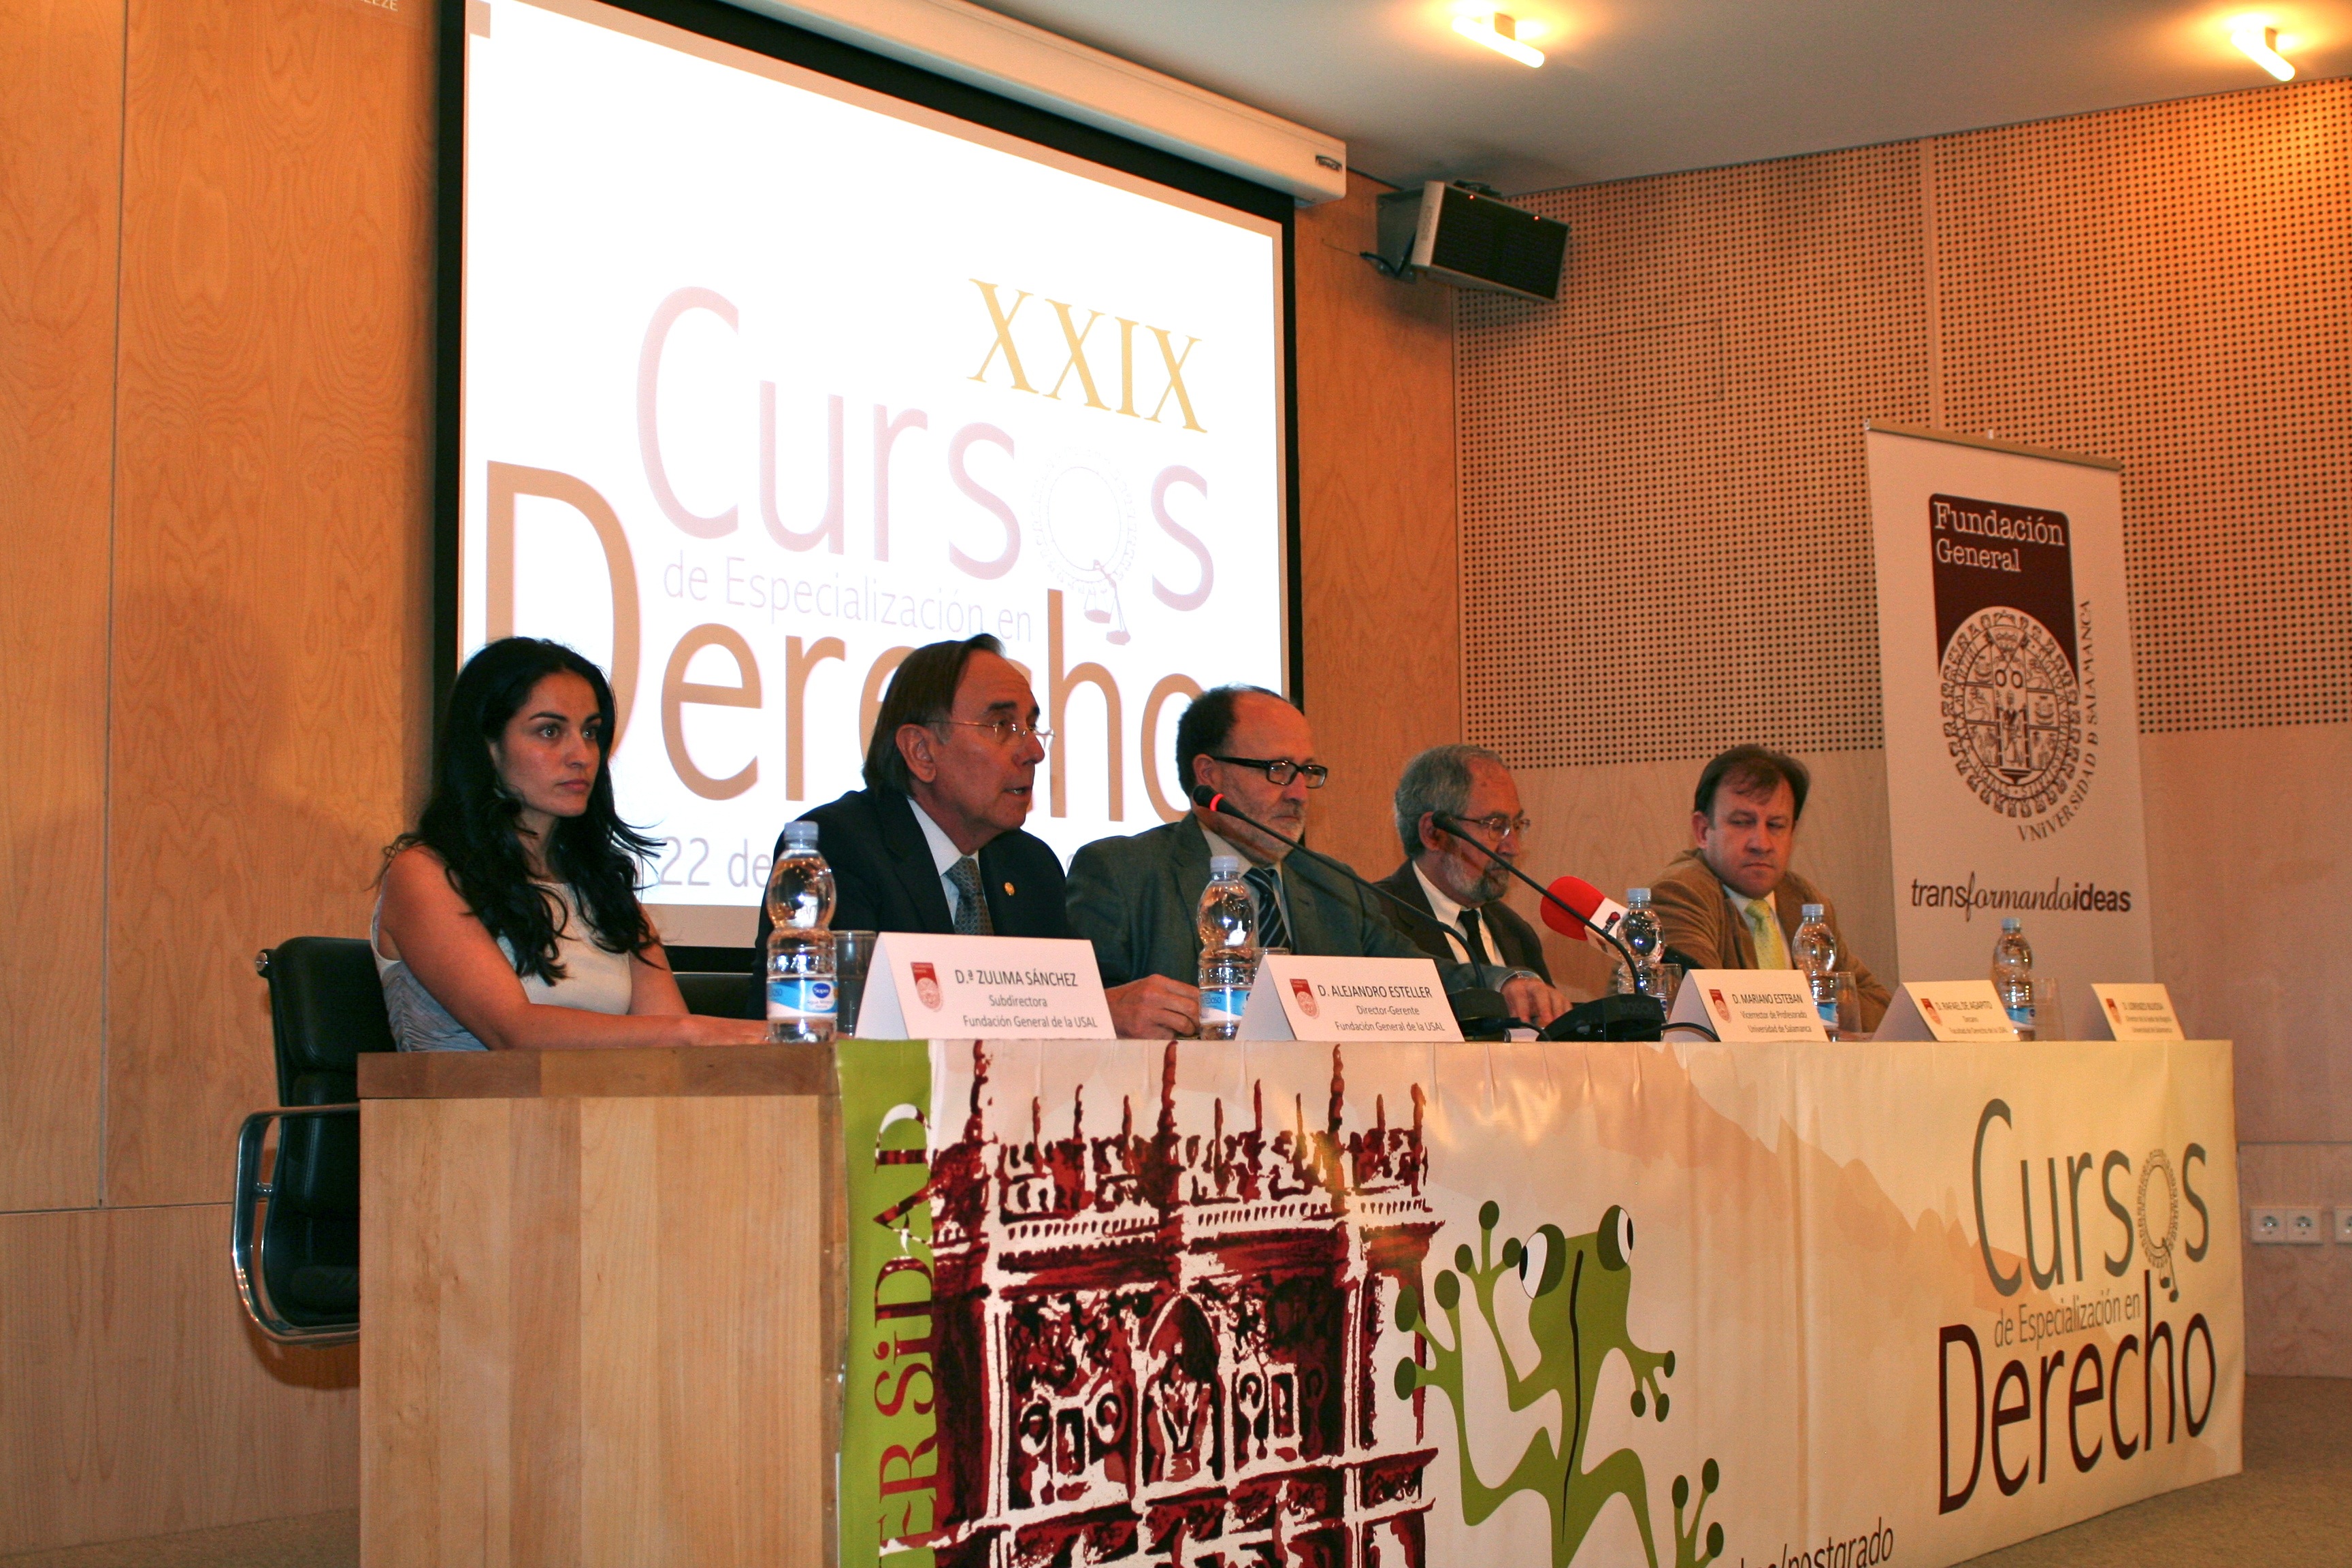 Inauguración de los XXIX Cursos de Especialización en Derecho de la Universidad de Salamanca